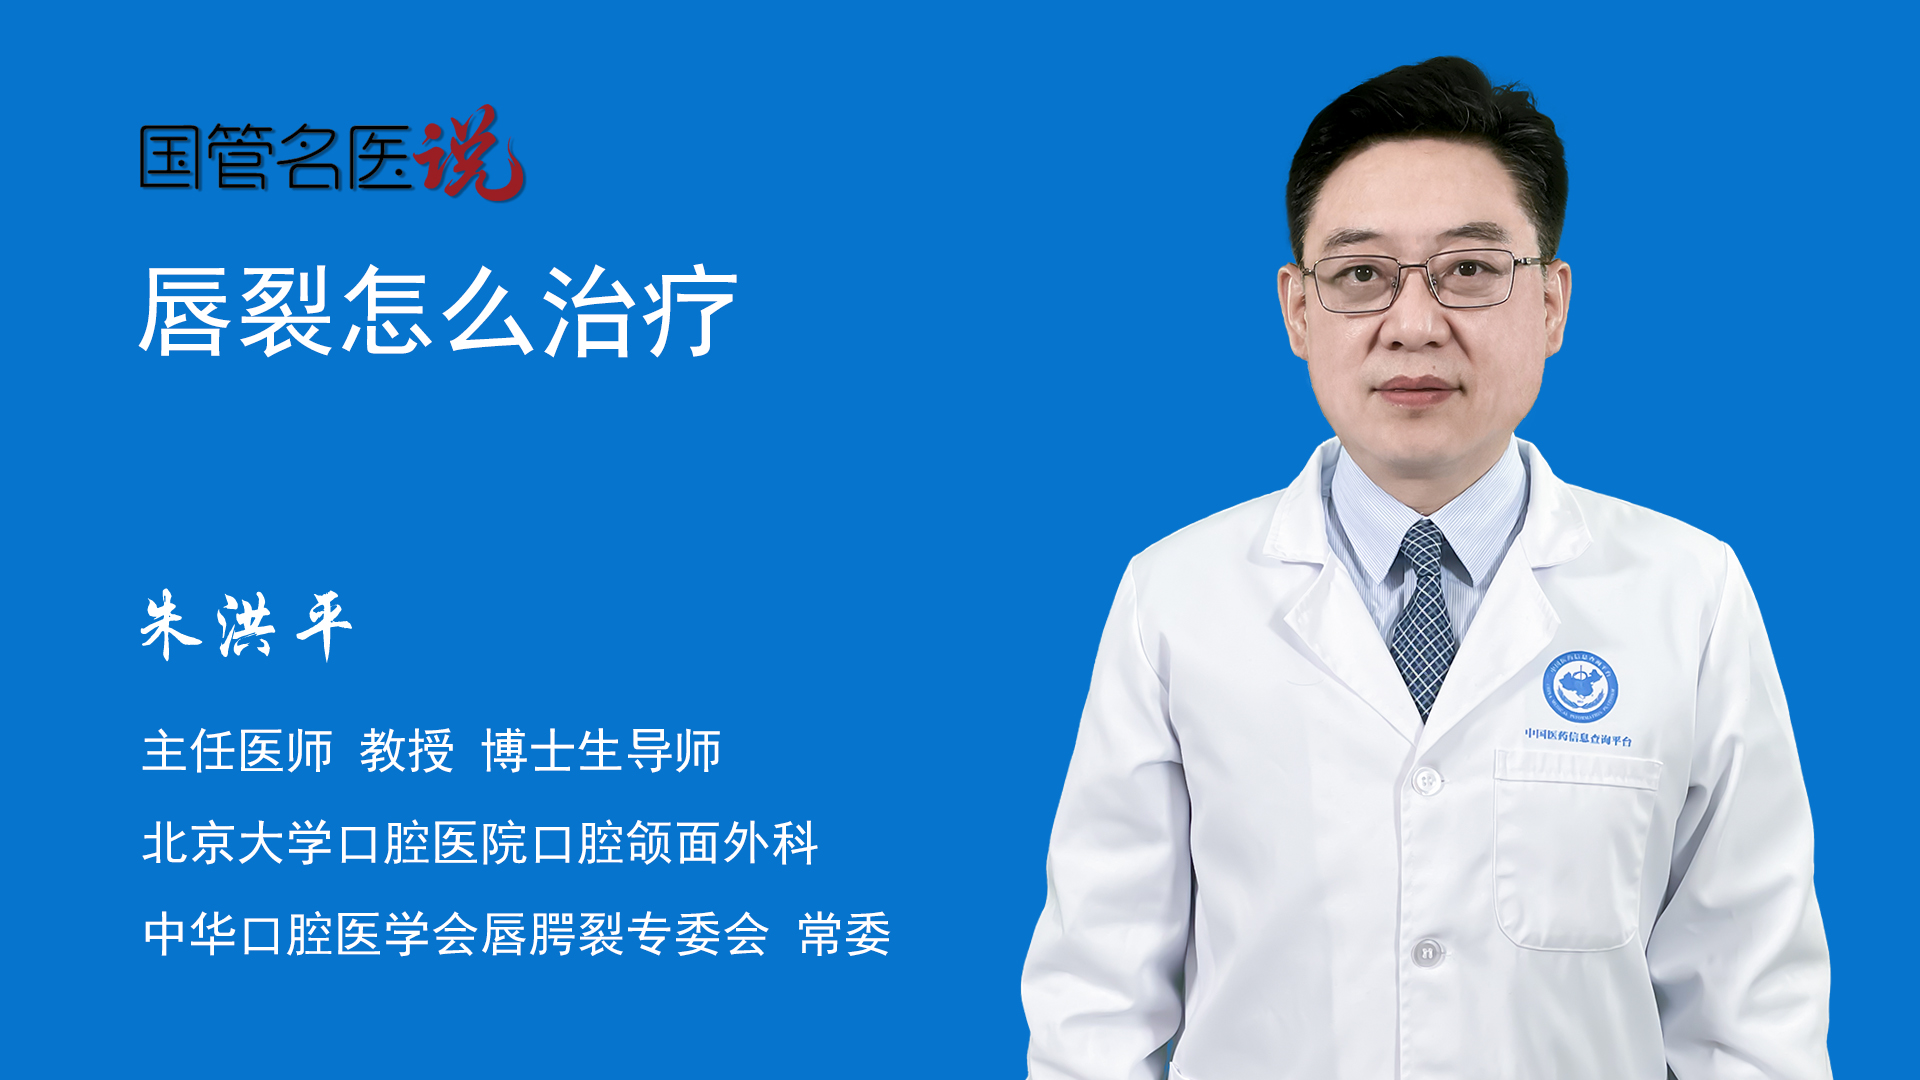 关于北京大学口腔医院专家名单(今天/挂号资讯)的信息